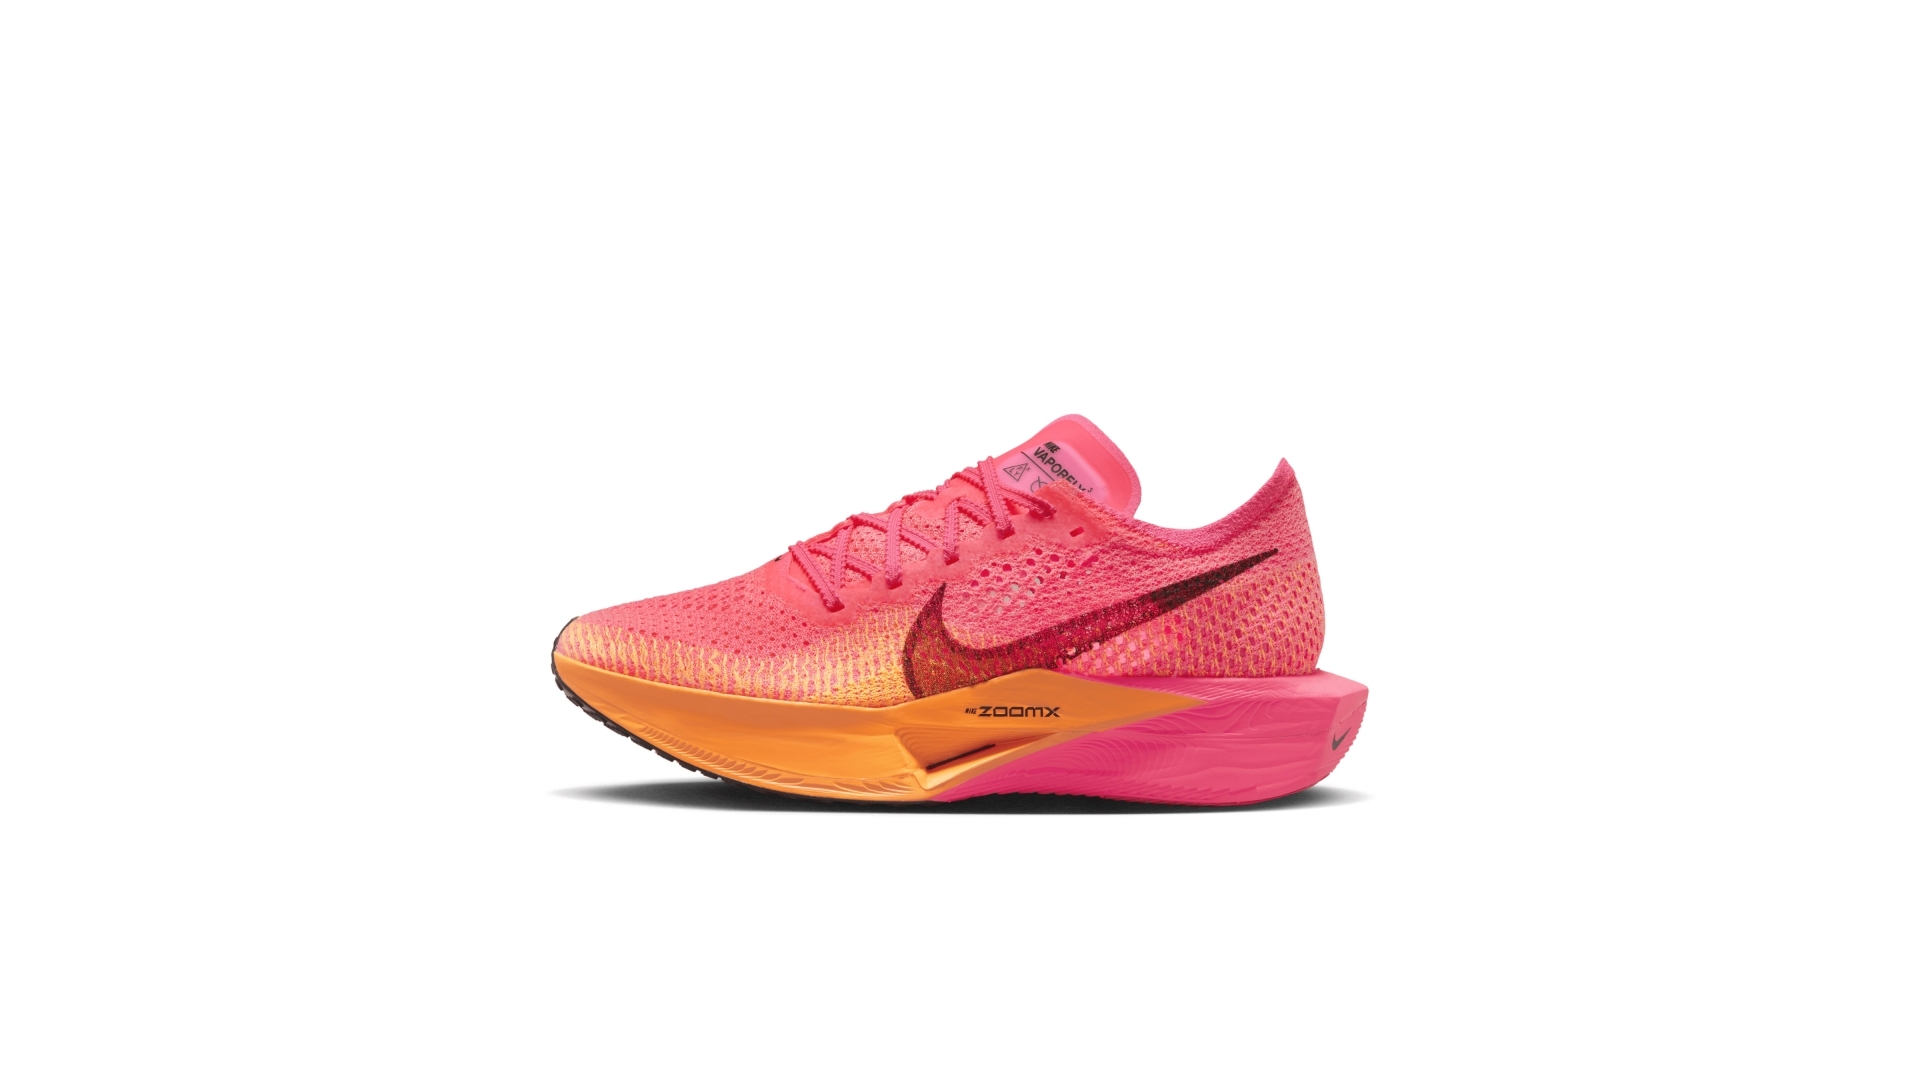 Nike Vaporfly 3 naiste jooksujalatsid